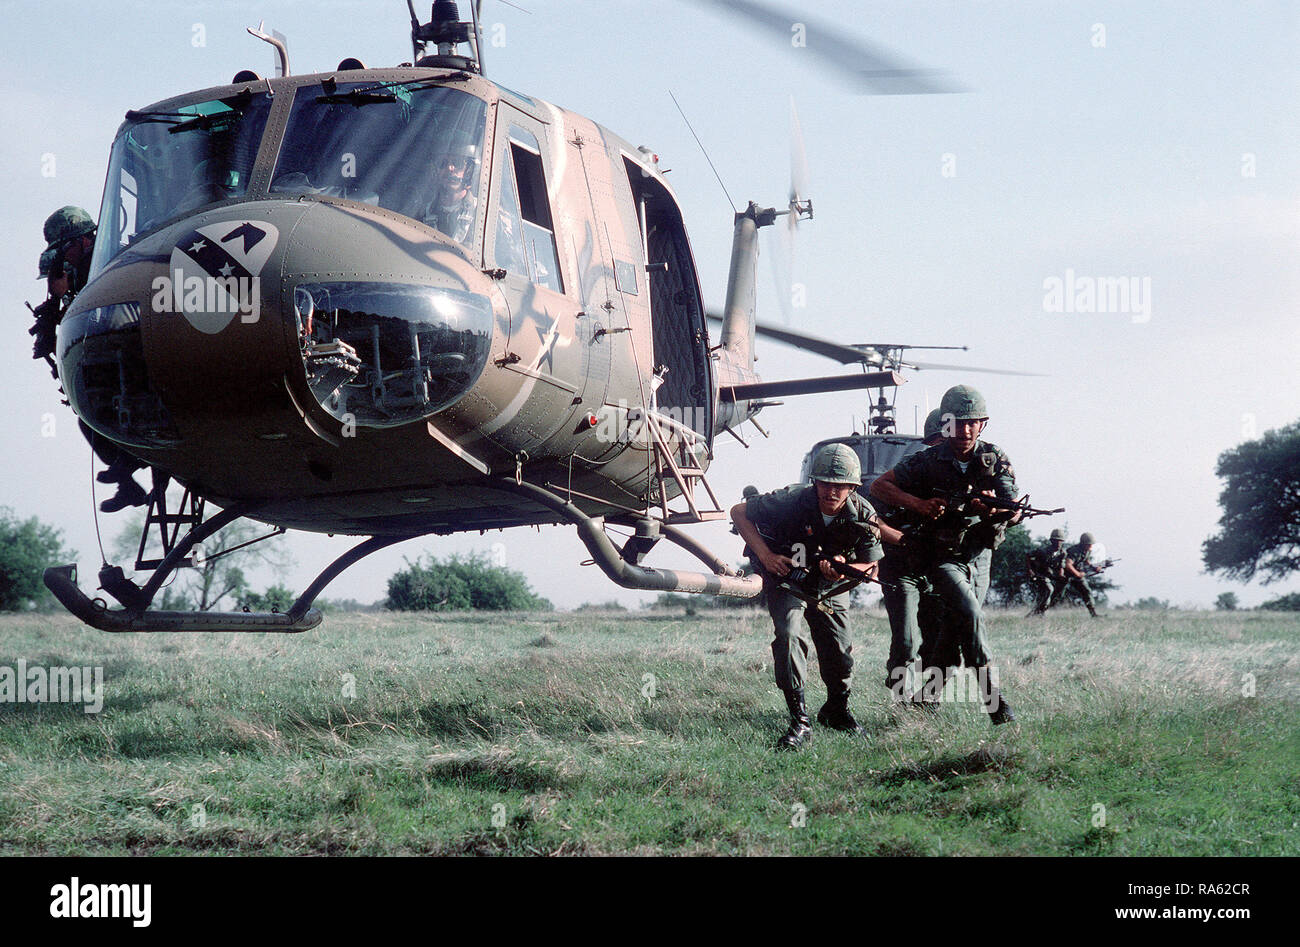 1975 - Mitglieder des 1.Kavallerie Division Bereitstellen von UH-1 Iroquois Hubschrauber während einer Übung. Stockfoto